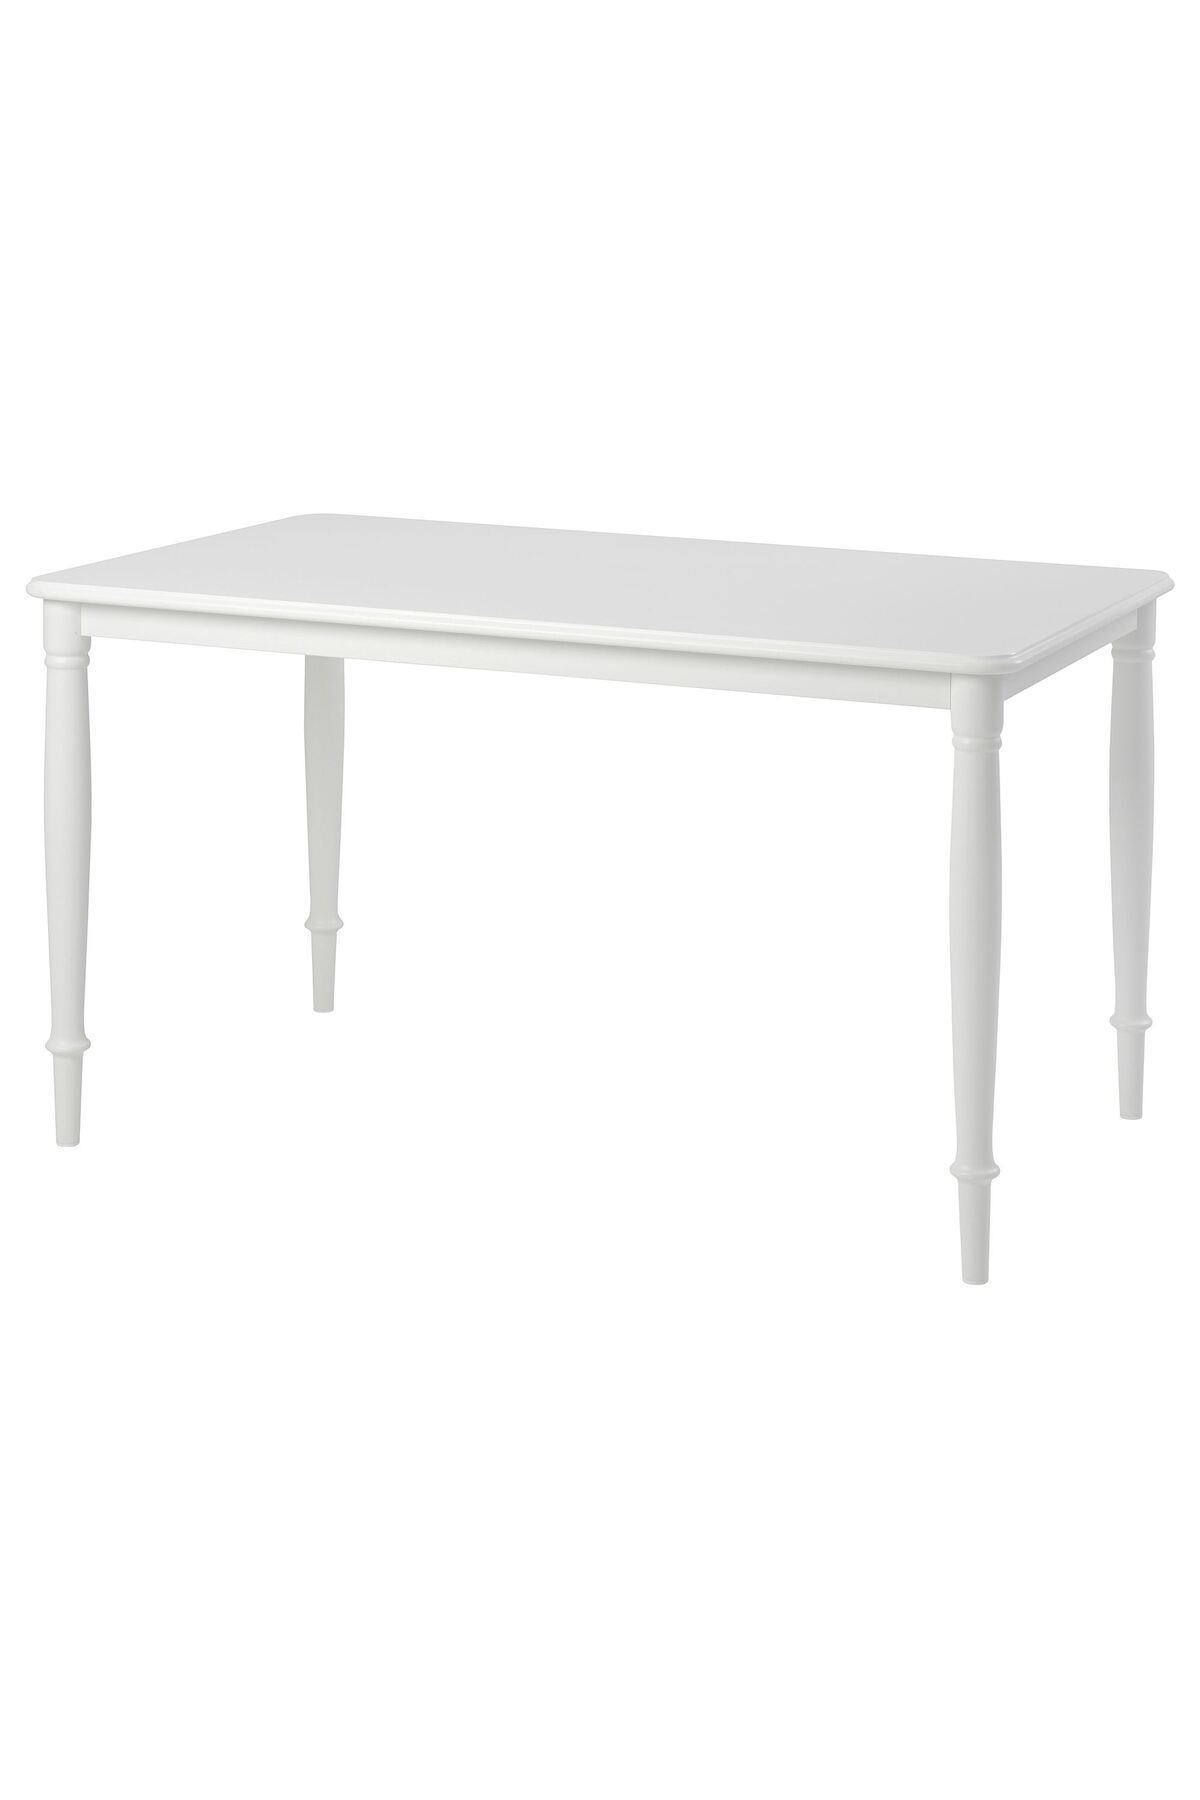 IKEA DANDERYD mutfak masası, beyaz, 130x80 cm, 4 kişilik